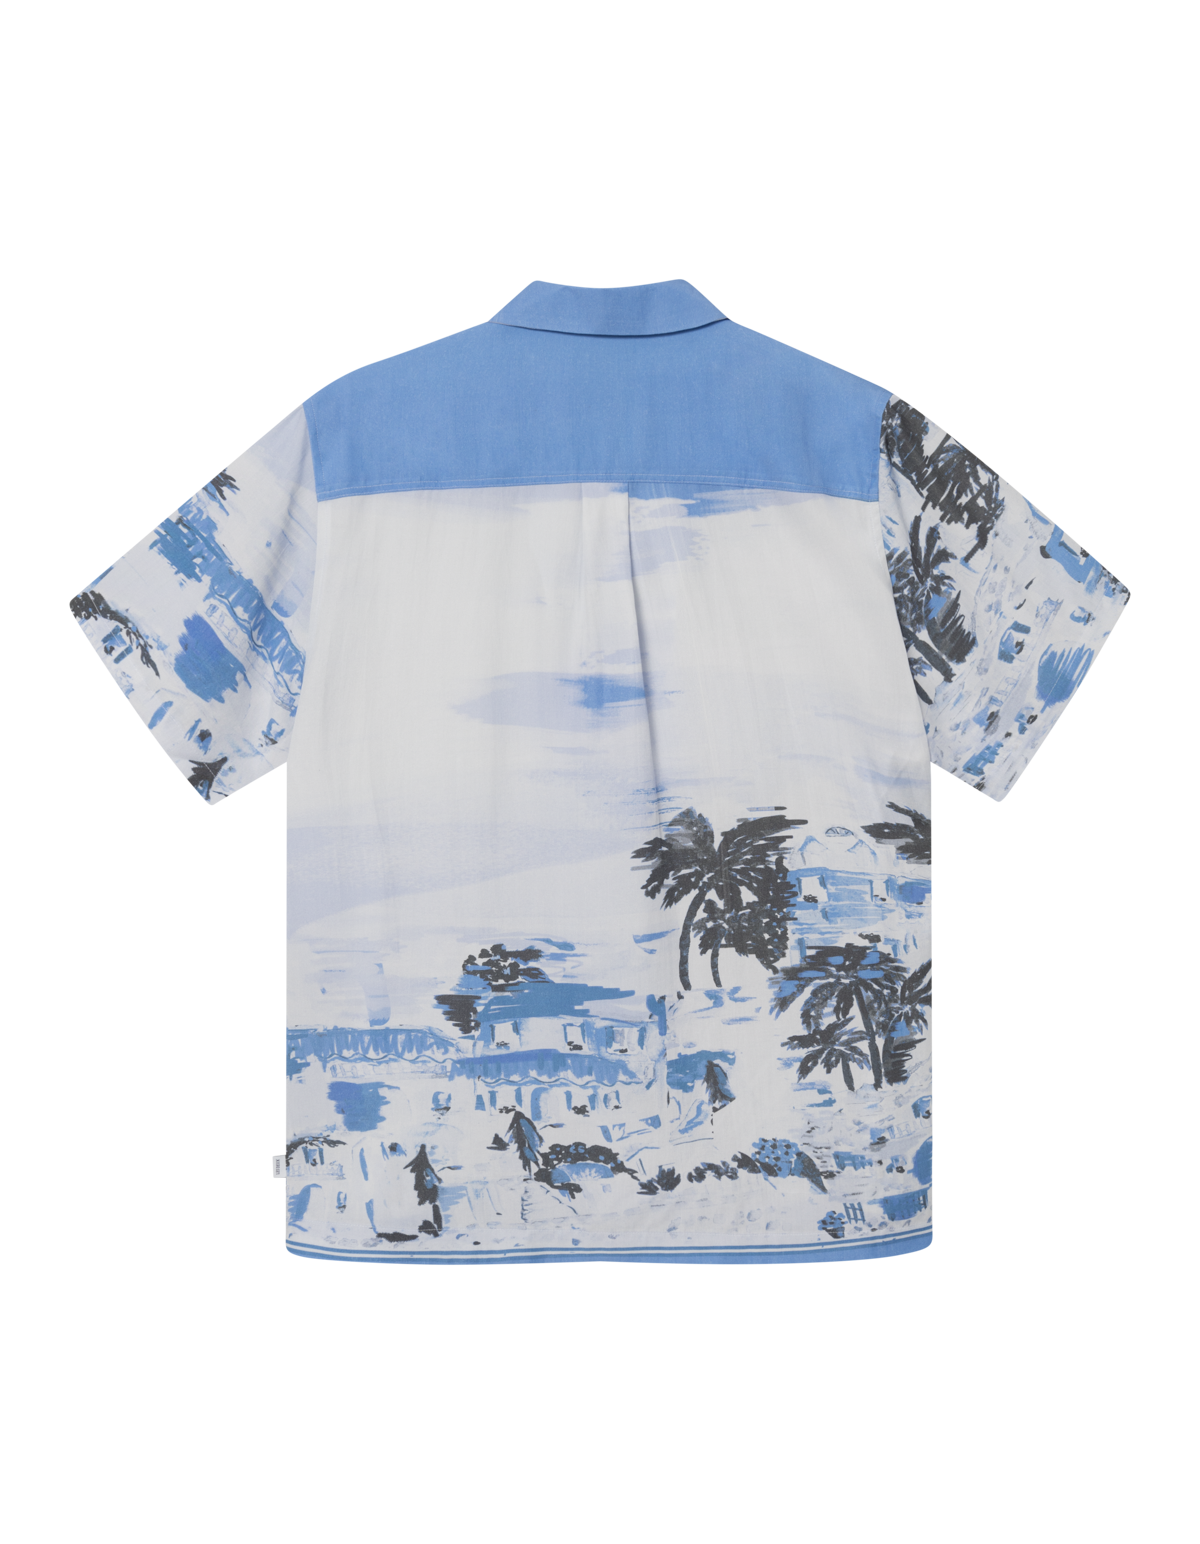 Coastal AOP SS Shirt